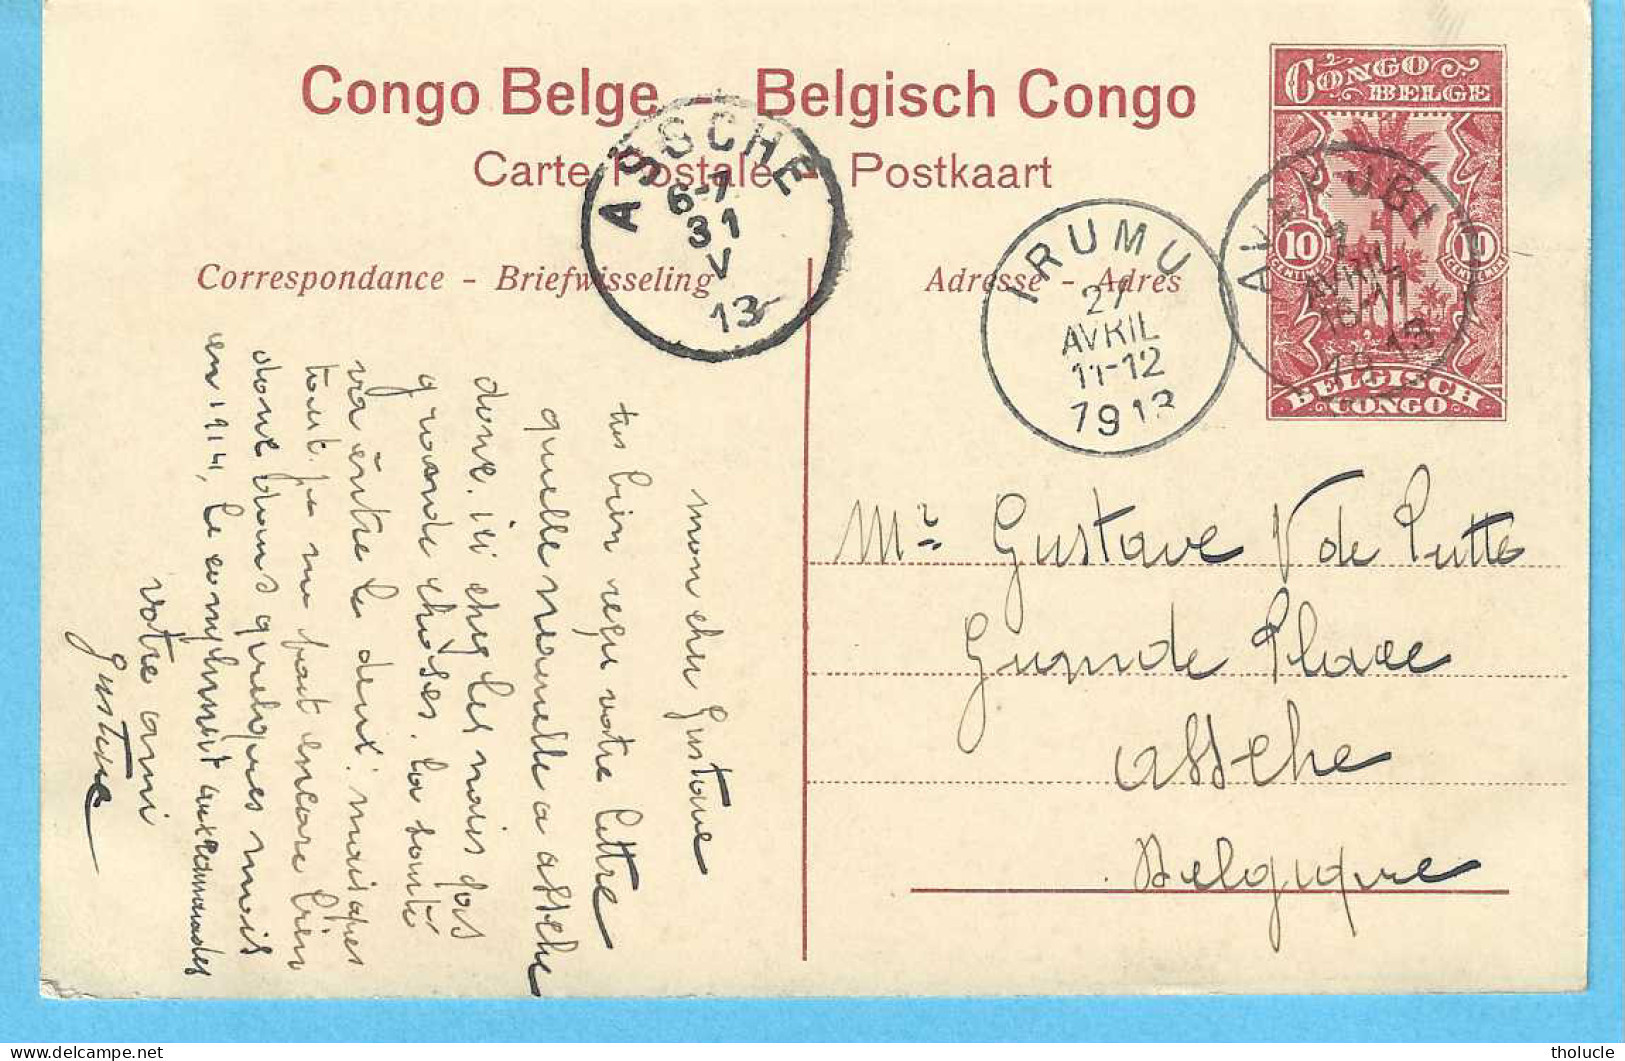 Belgisch Congo Belge-Entier Postal Illustré 10c-1913-Léopoldville-Les Bassins-De Dokken-Cachet-IRUMU-AVAKUBI-1913" - Enteros Postales